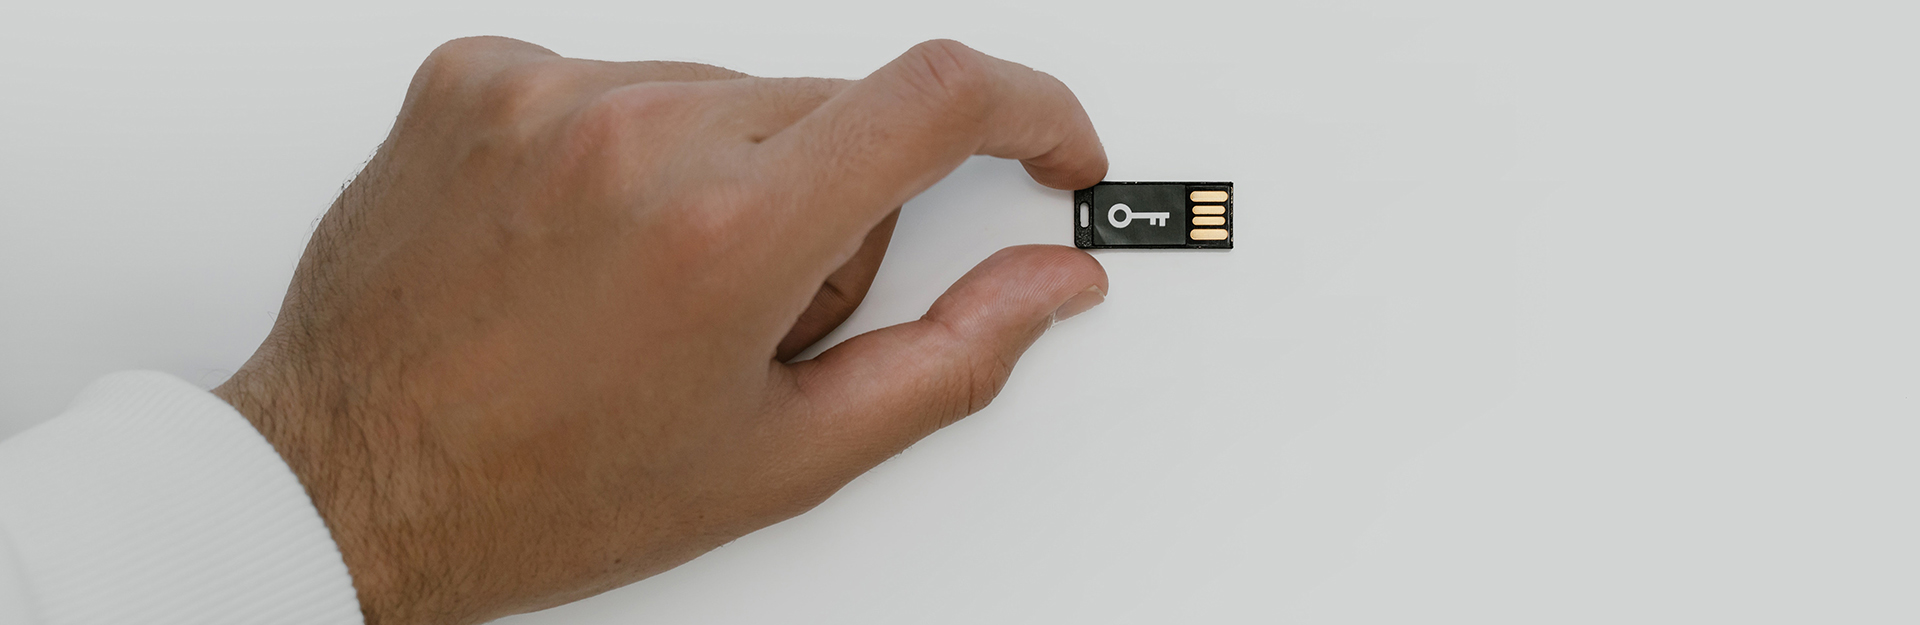 Bild des Schlüssels zur IT-Sicherheit in Form eines USB-Stick